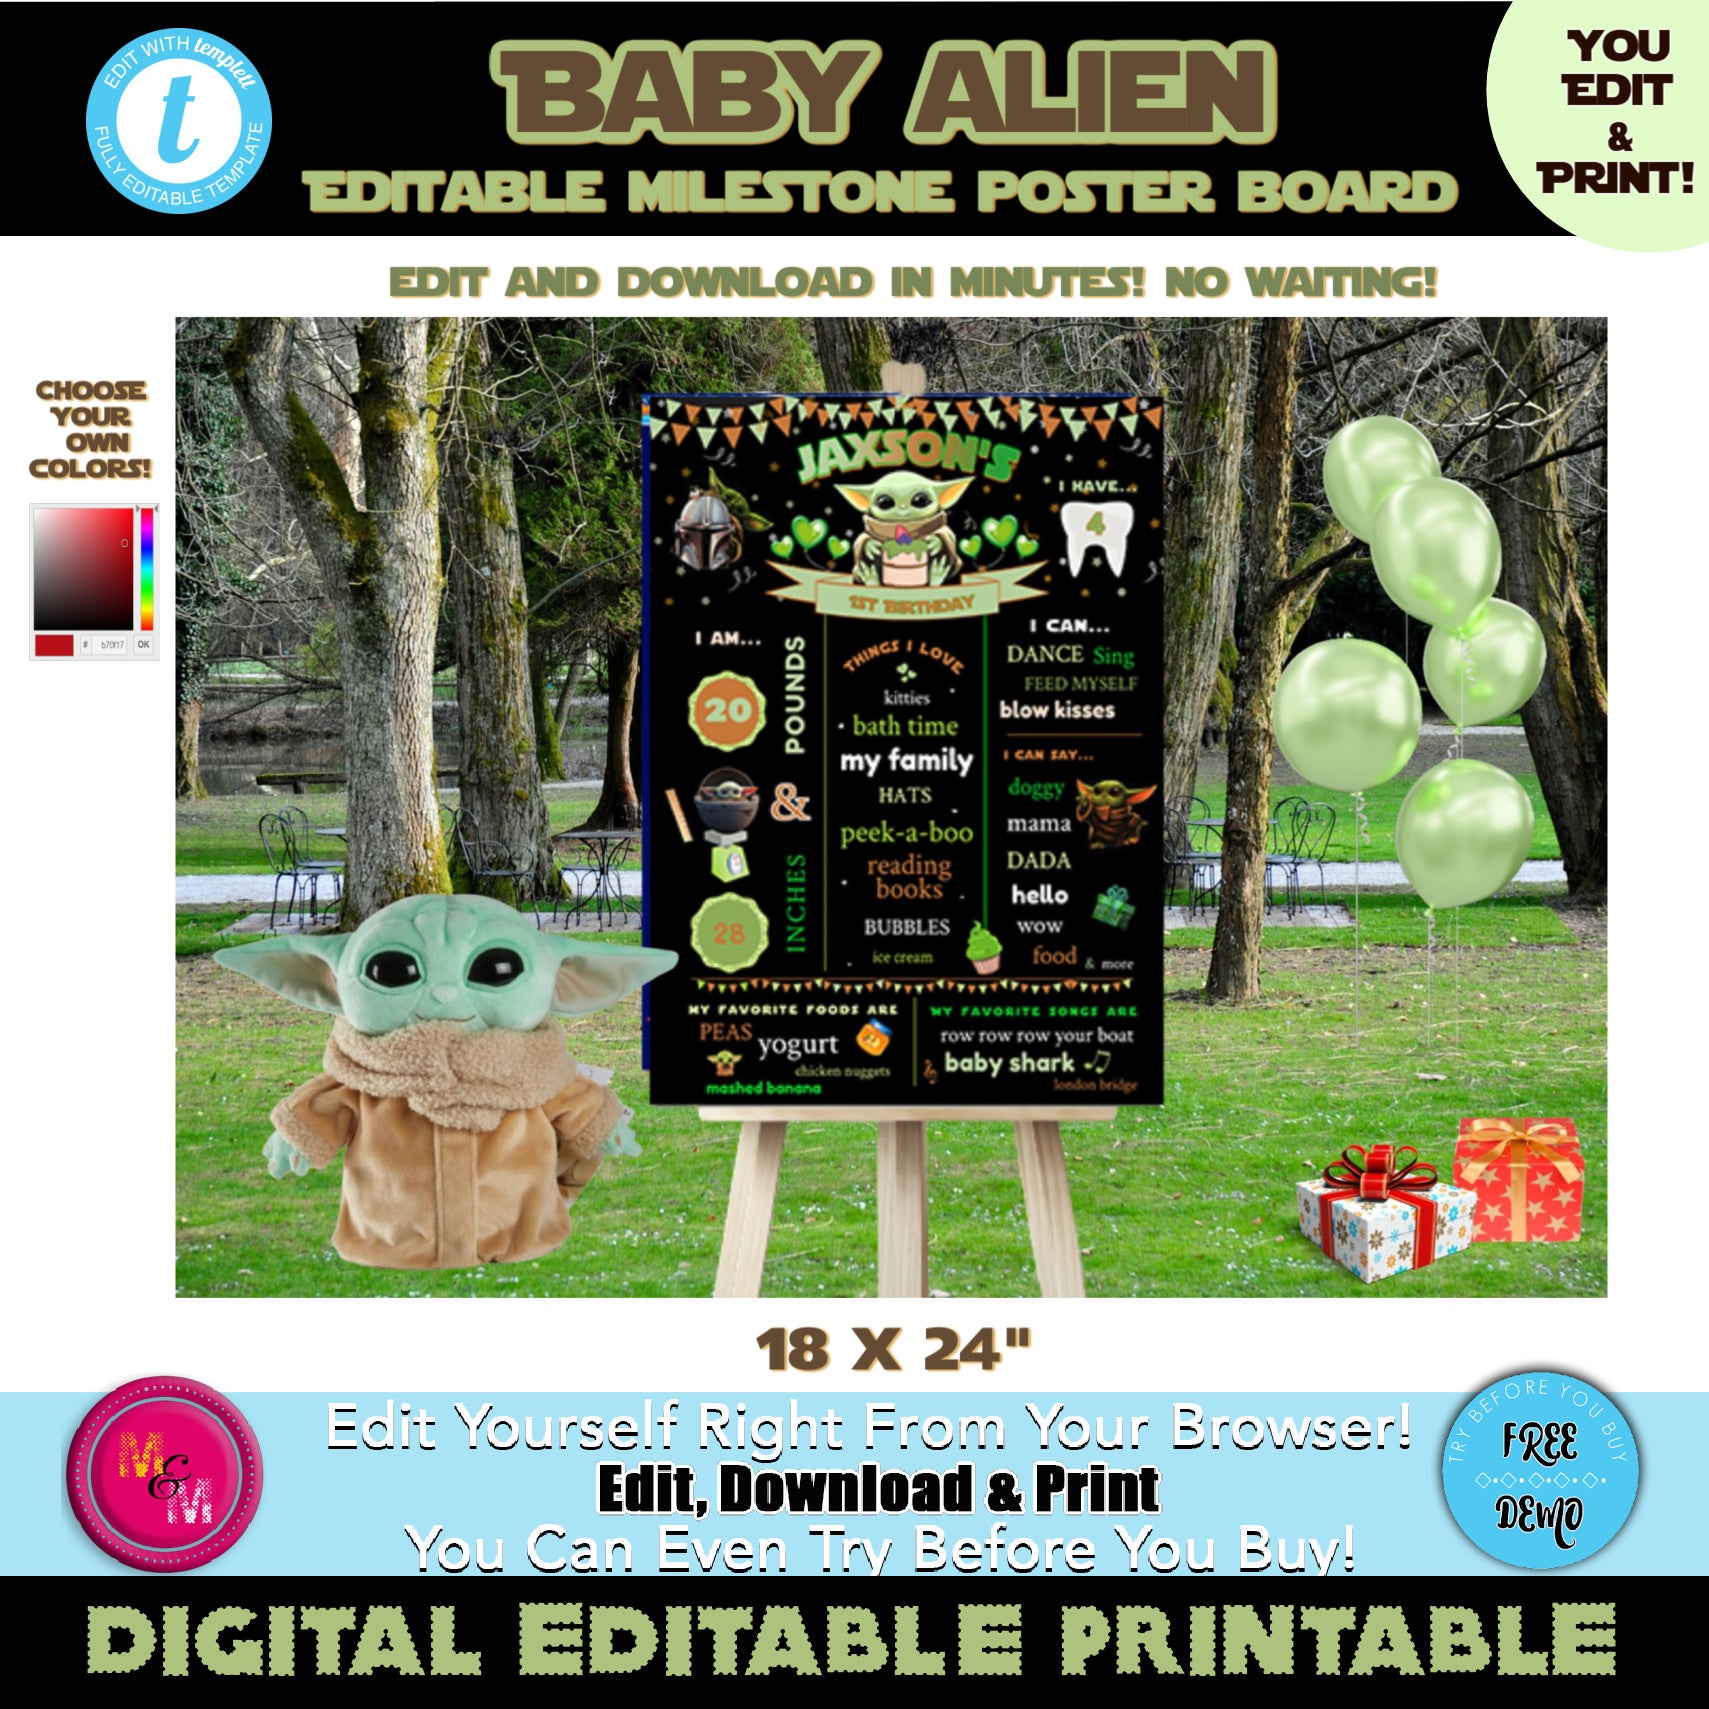 Editable  Baby Alien Milestone Board 18x24", Baby Alien Poster Board